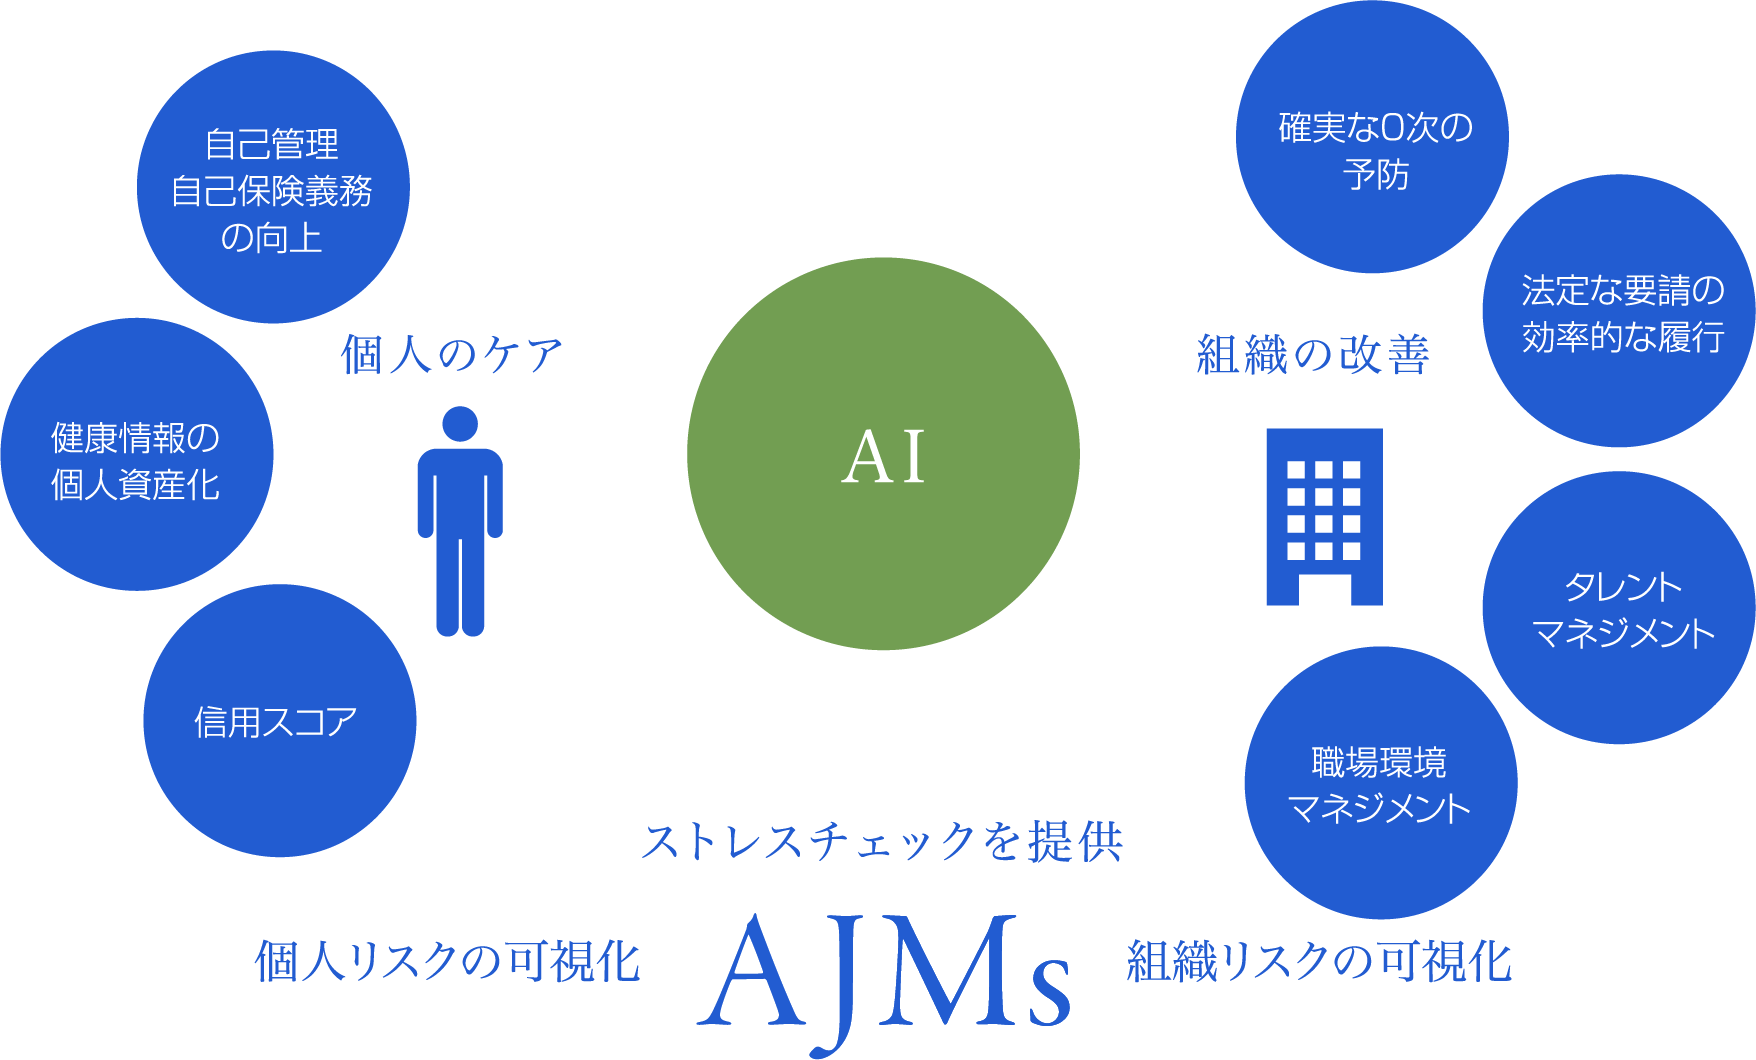 ストレスチェックを提供 個人リスクの可視化 AJMs 組織リスクの可視化